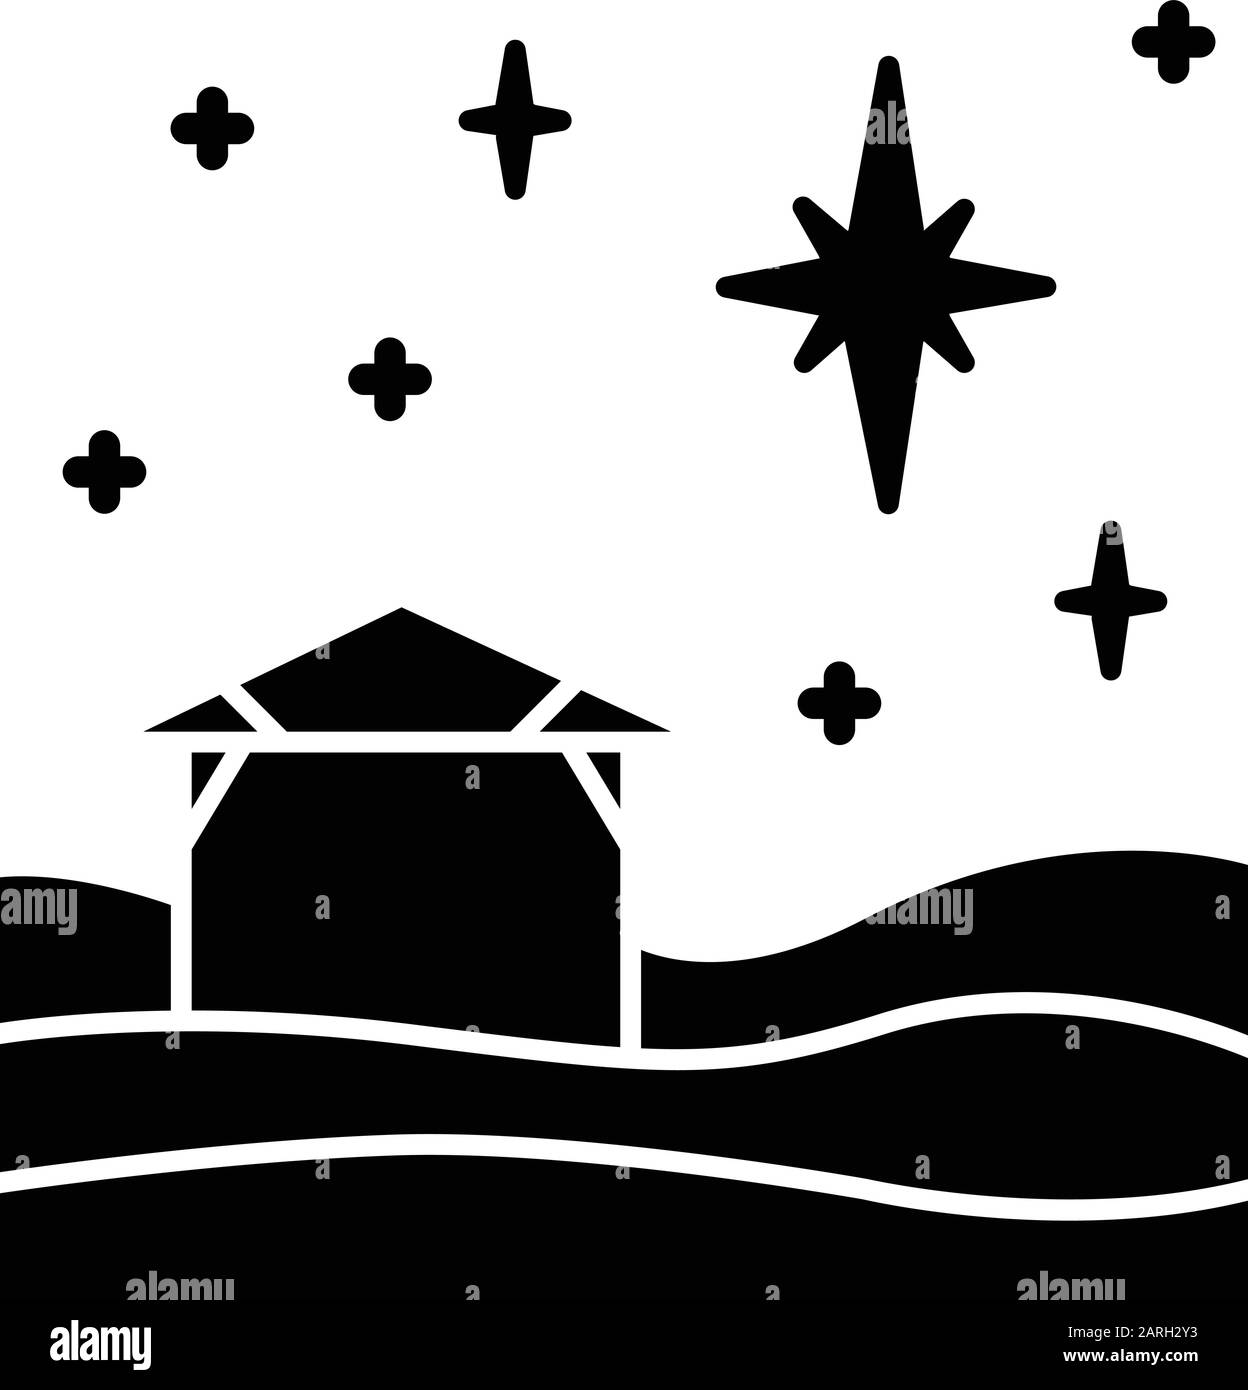 Weihnachtsstern Glyphe Symbol Christliche Heilige Nacht Weihnachtsabend Sternenhimmel Und Kleines Haus Geburt Jesu Christi Stern Von Bethlehem Silhouetten Symbol Stock Vektorgrafik Alamy